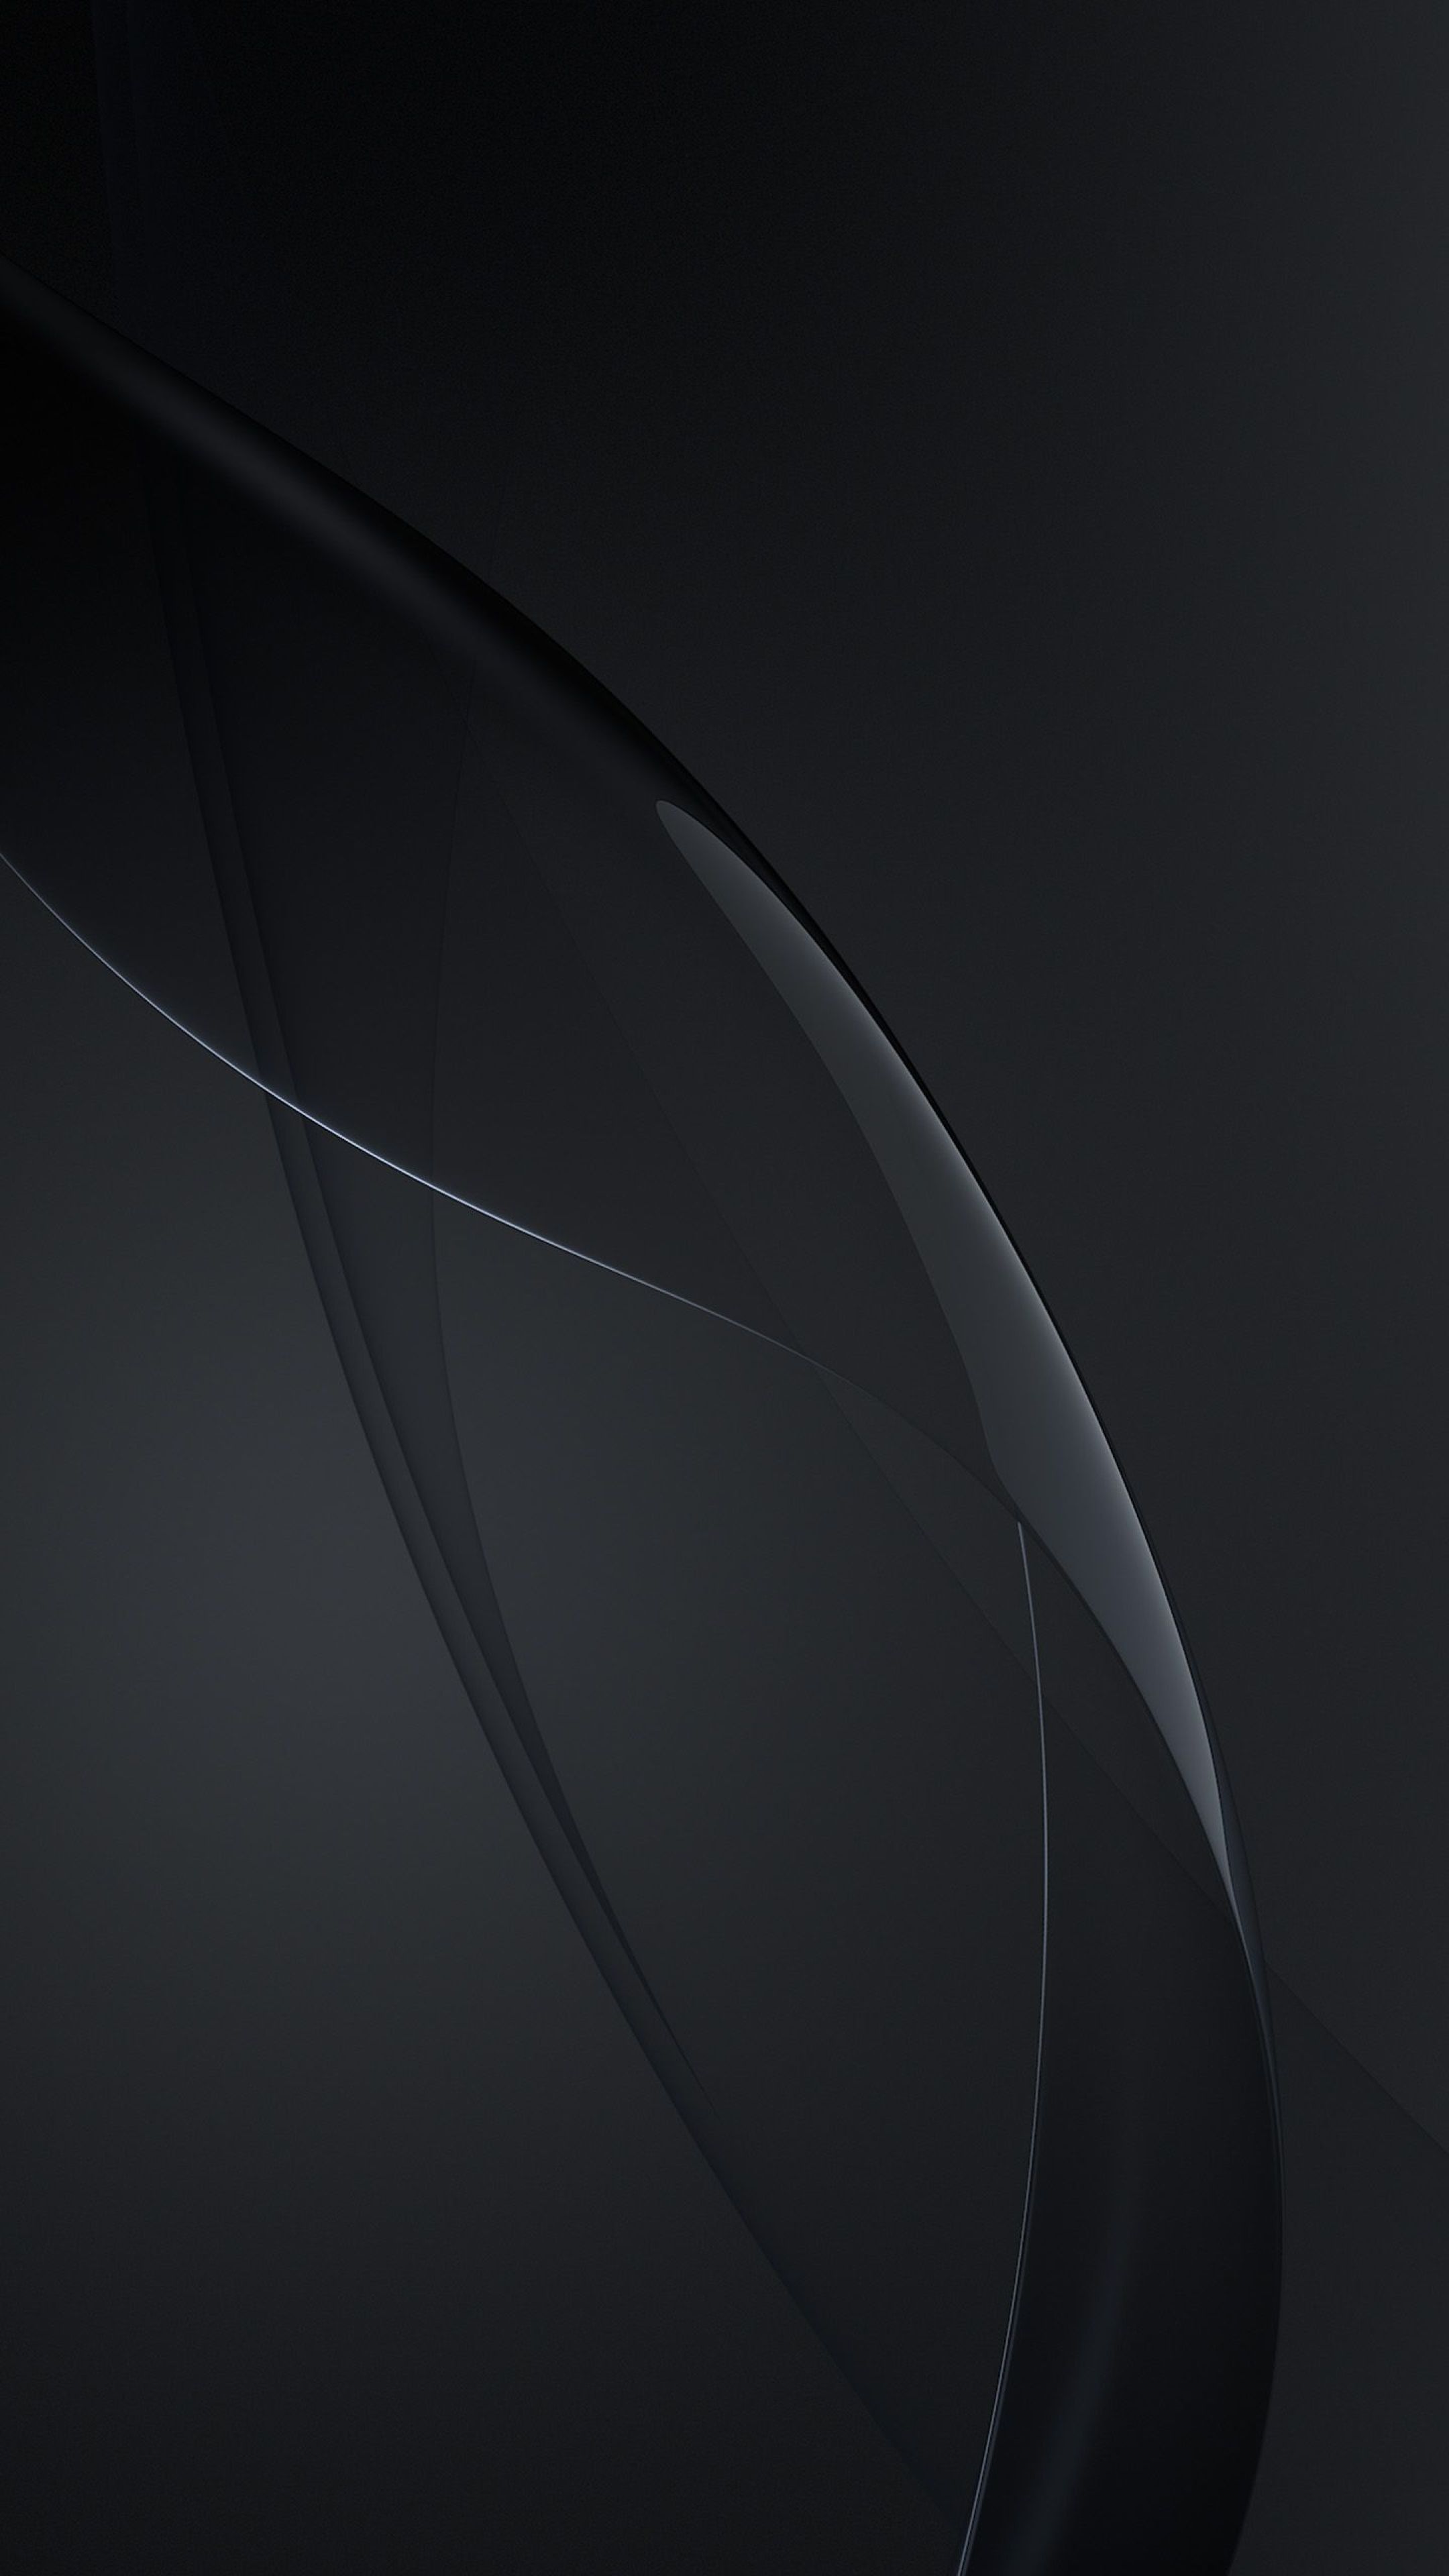 Hình nền đen Samsung: Khám phá vẻ đẹp đơn giản nhưng tinh tế của hình nền đen Samsung và cảm nhận sự sang trọng, lịch lãm mà mẫu thiết kế này mang đến.